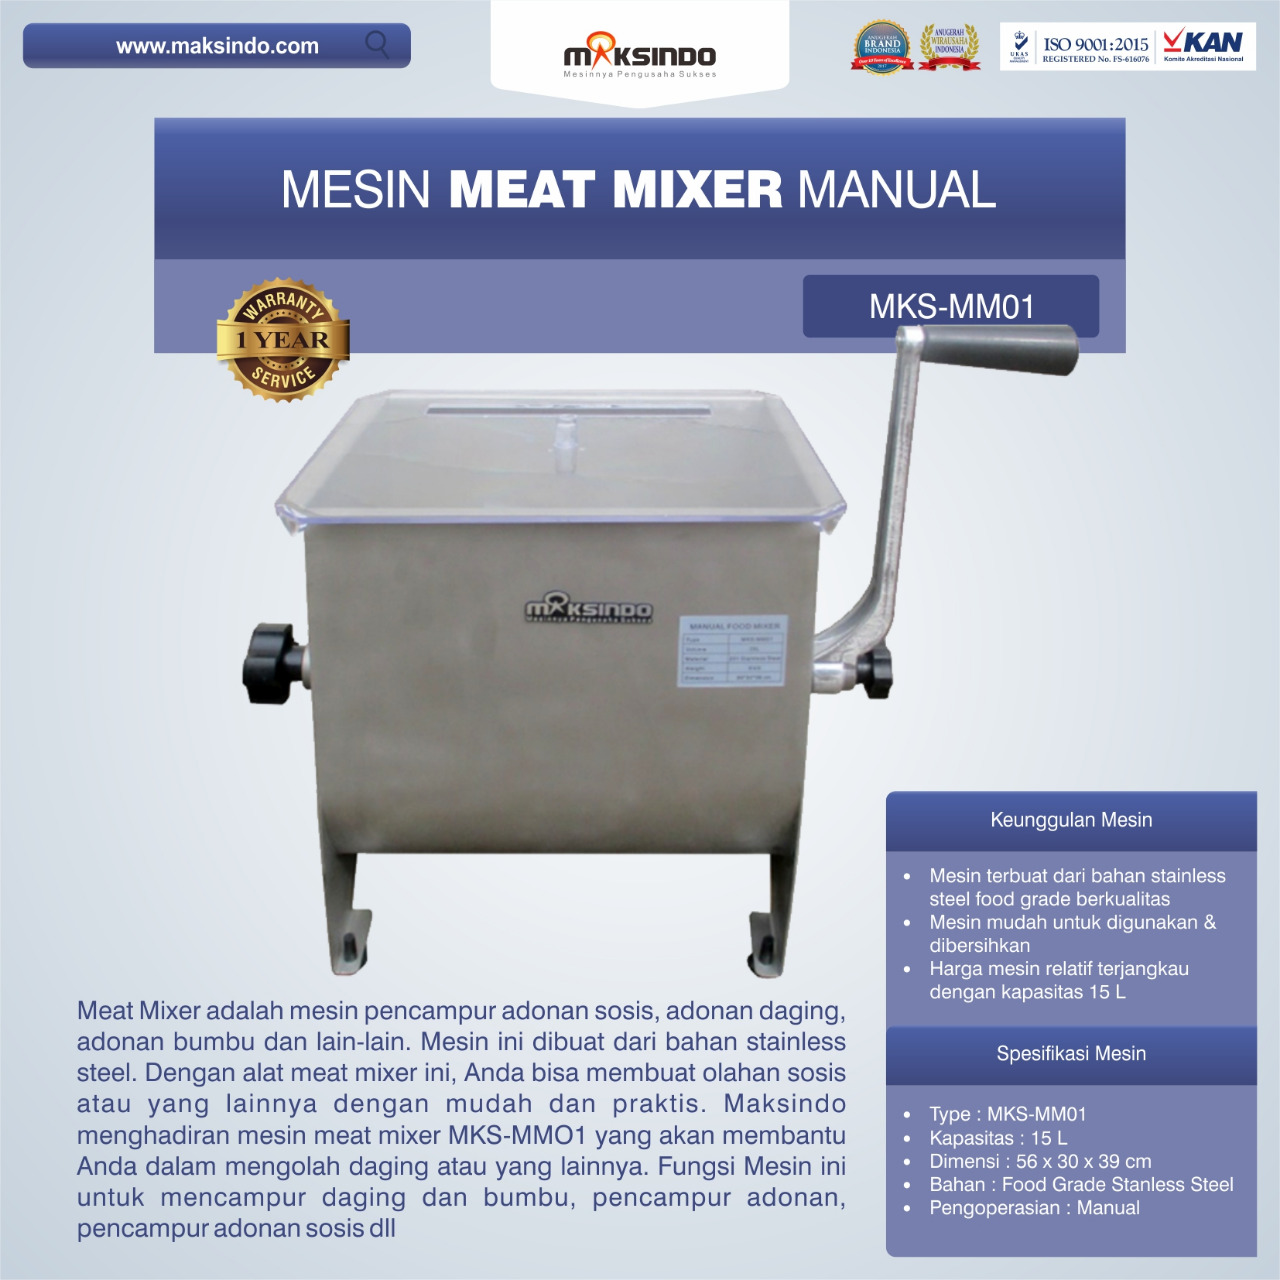 Jual Manual Meat Mixer MKS-MM01 di Blitar